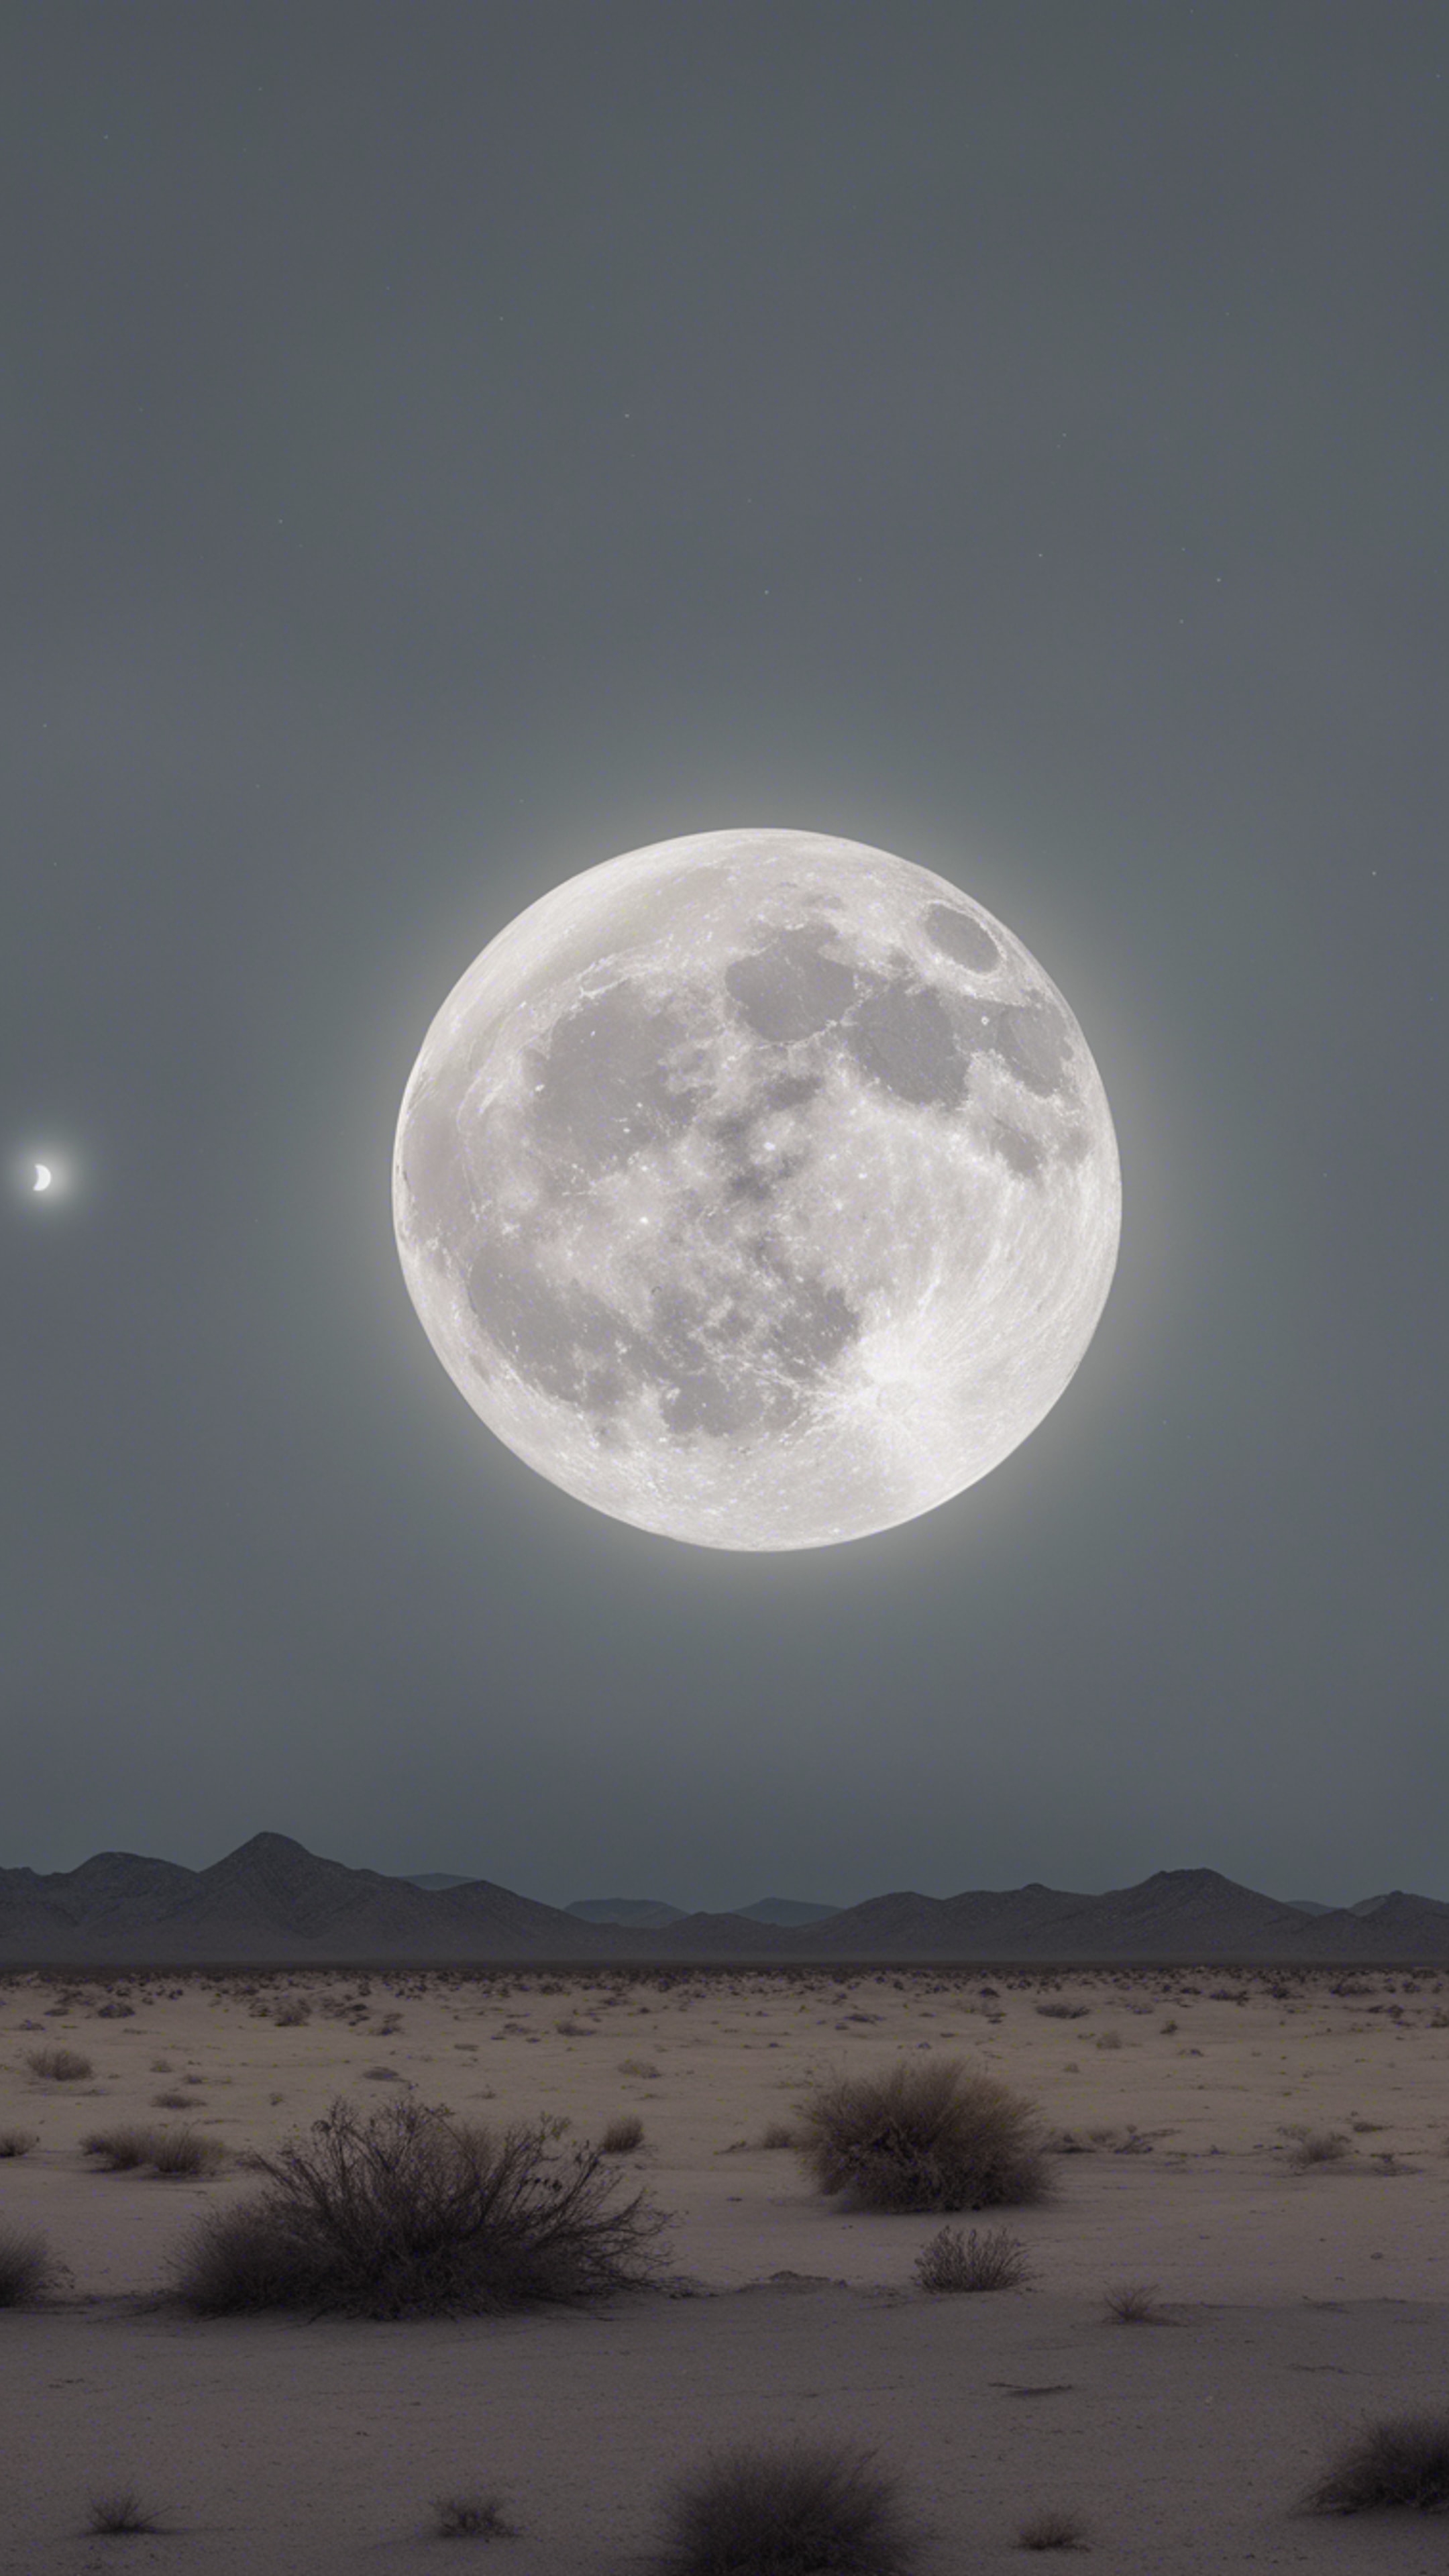 An eerie full moon casting a light gray hue over a desolate desert landscape.壁紙[b219b4d700dc4cdd8b88]